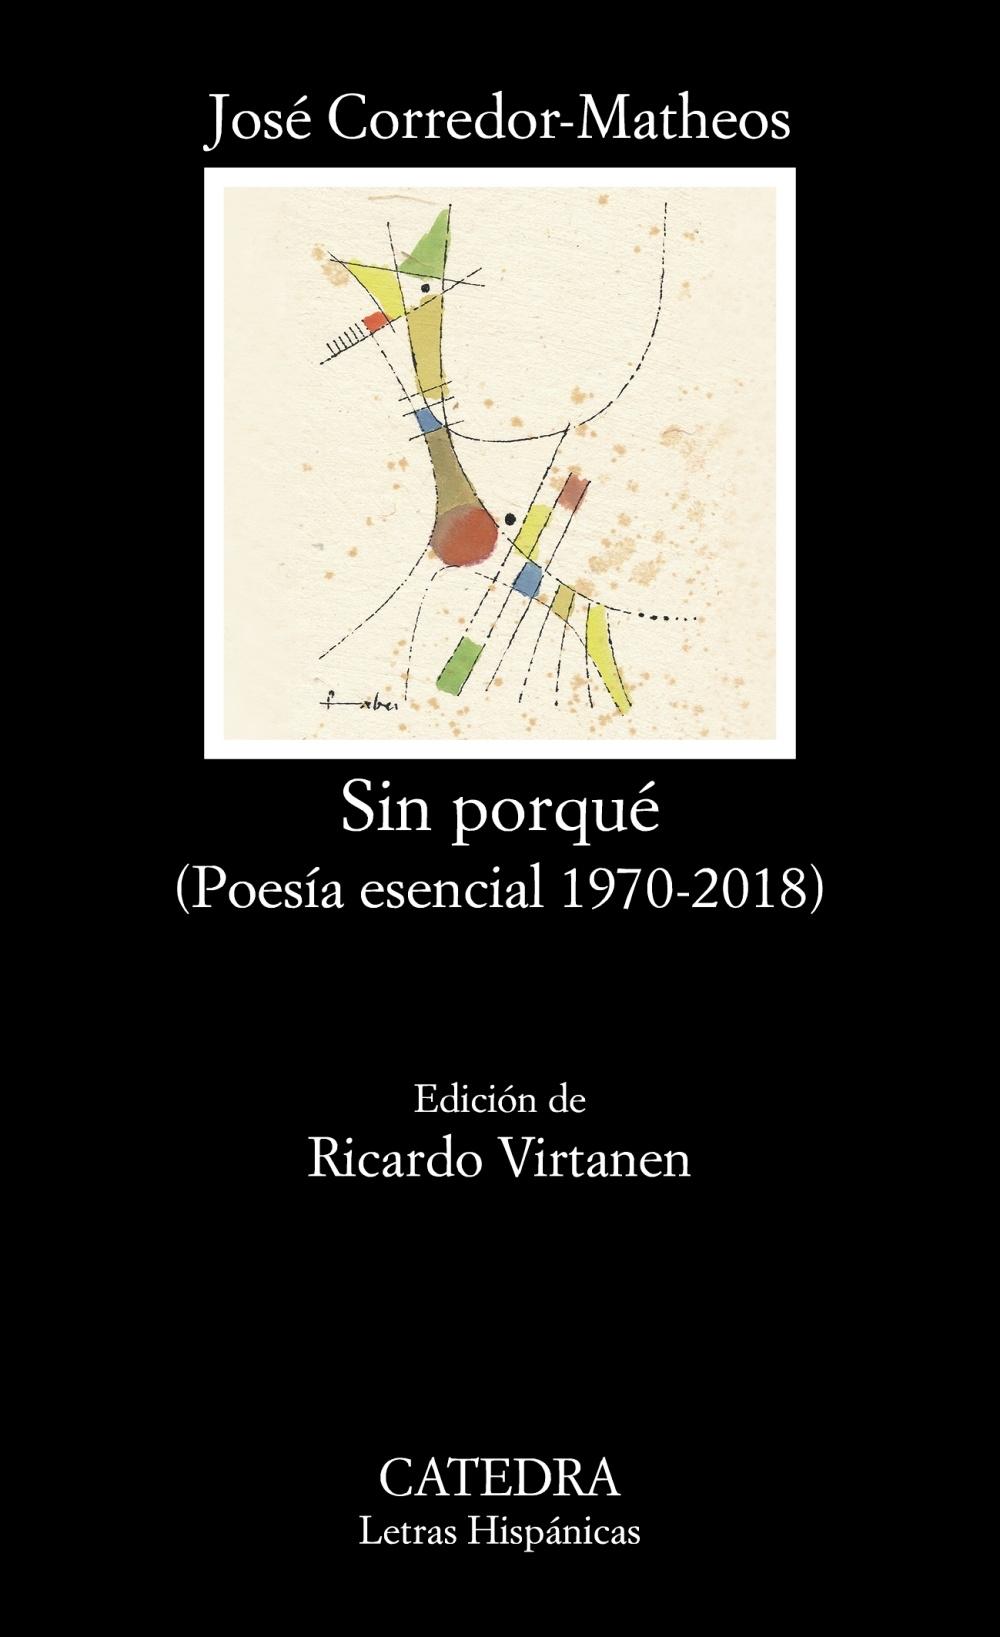 Sin porqué "(Poesía esencial 1970-2018)"